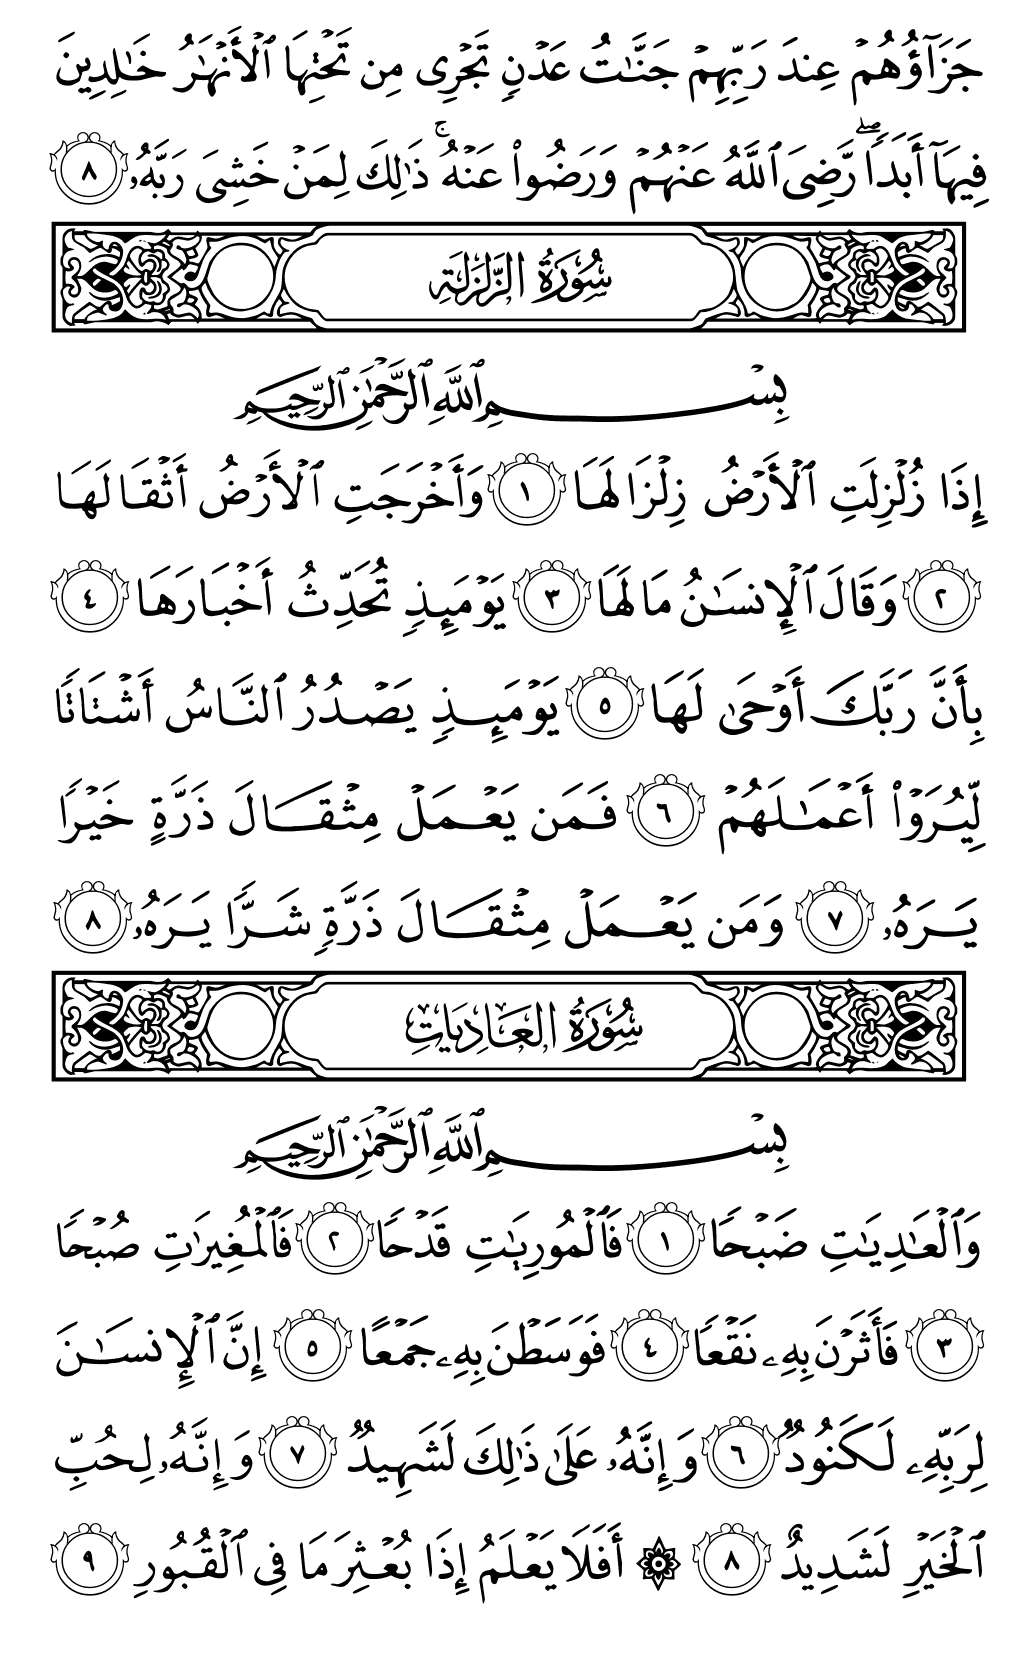 الصفحة رقم 599 من القرآن الكريم